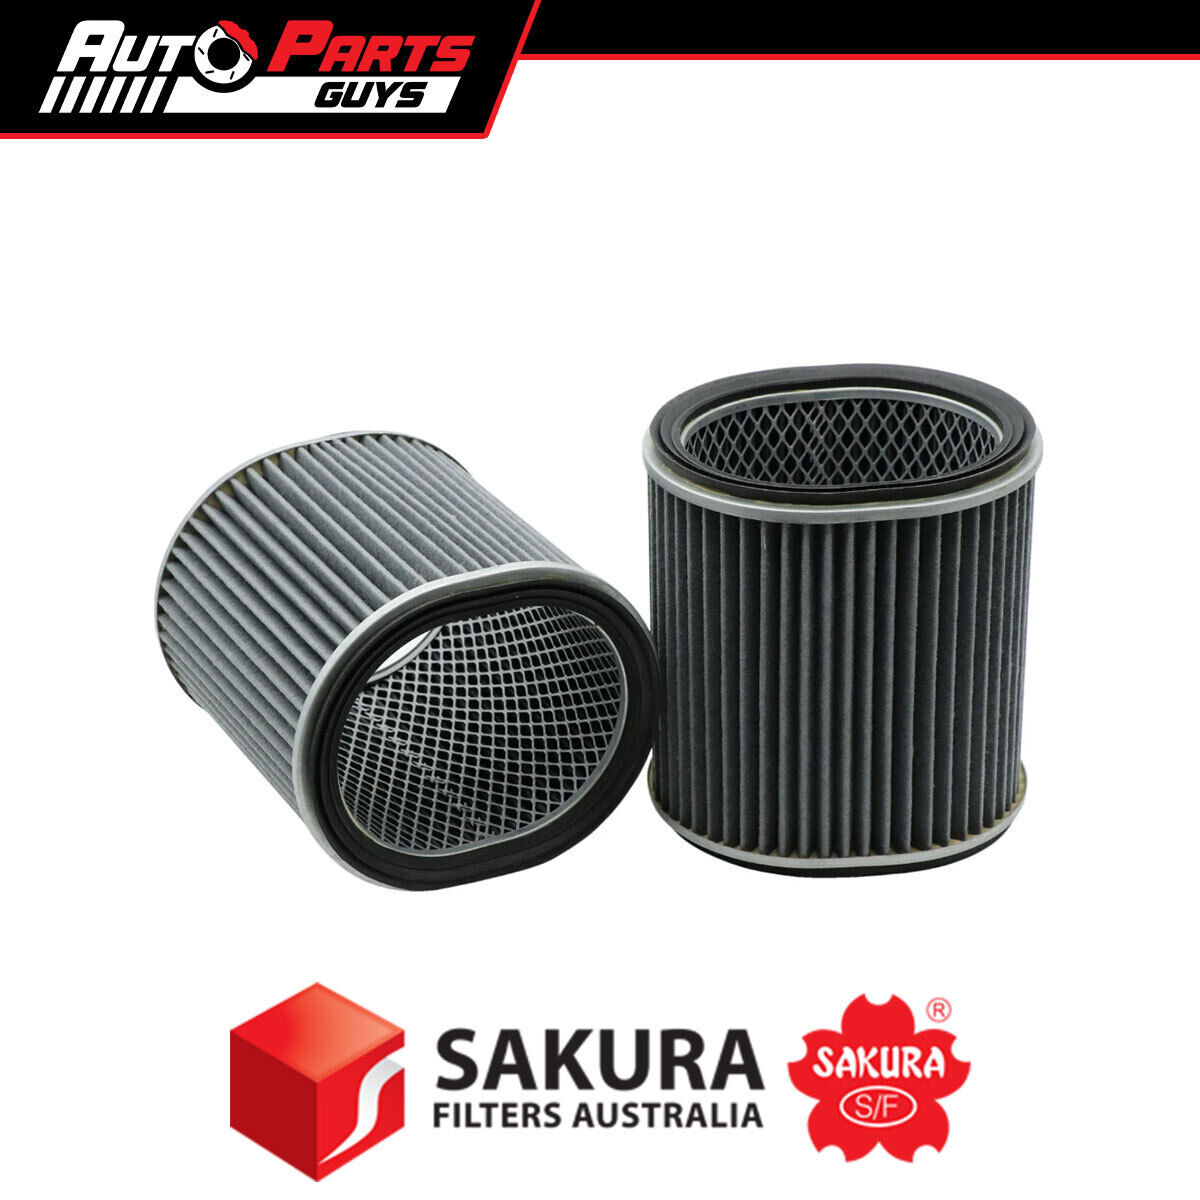 Sakura Air Filter A1242 fits Mitsubishi Cordia, Starion 1.8L 2.0L 82 - 89